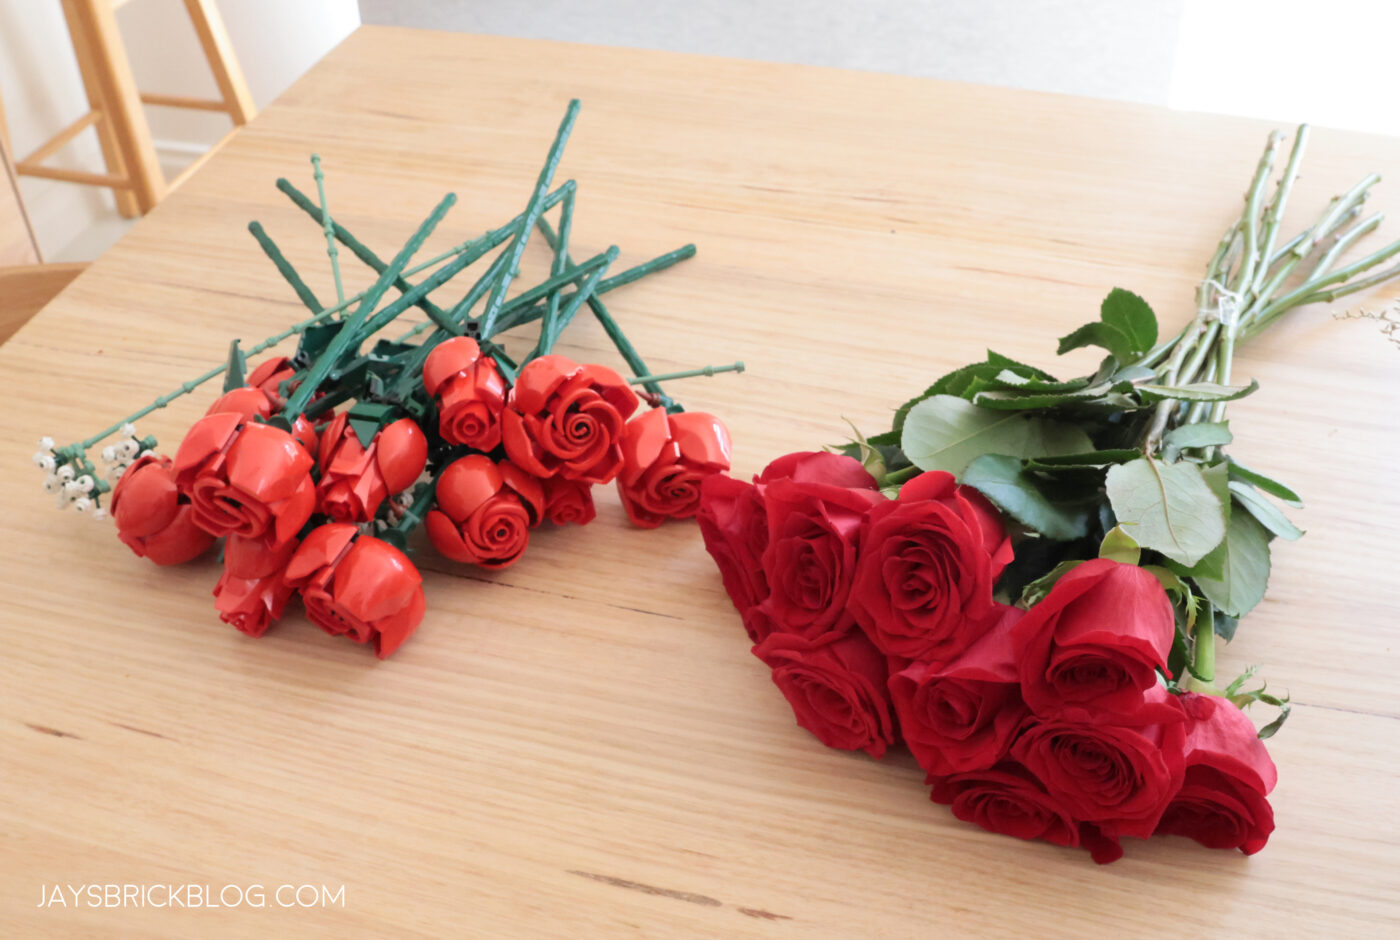 LEGO® 10328 - Le bouquet de roses - LEGO® Iconic